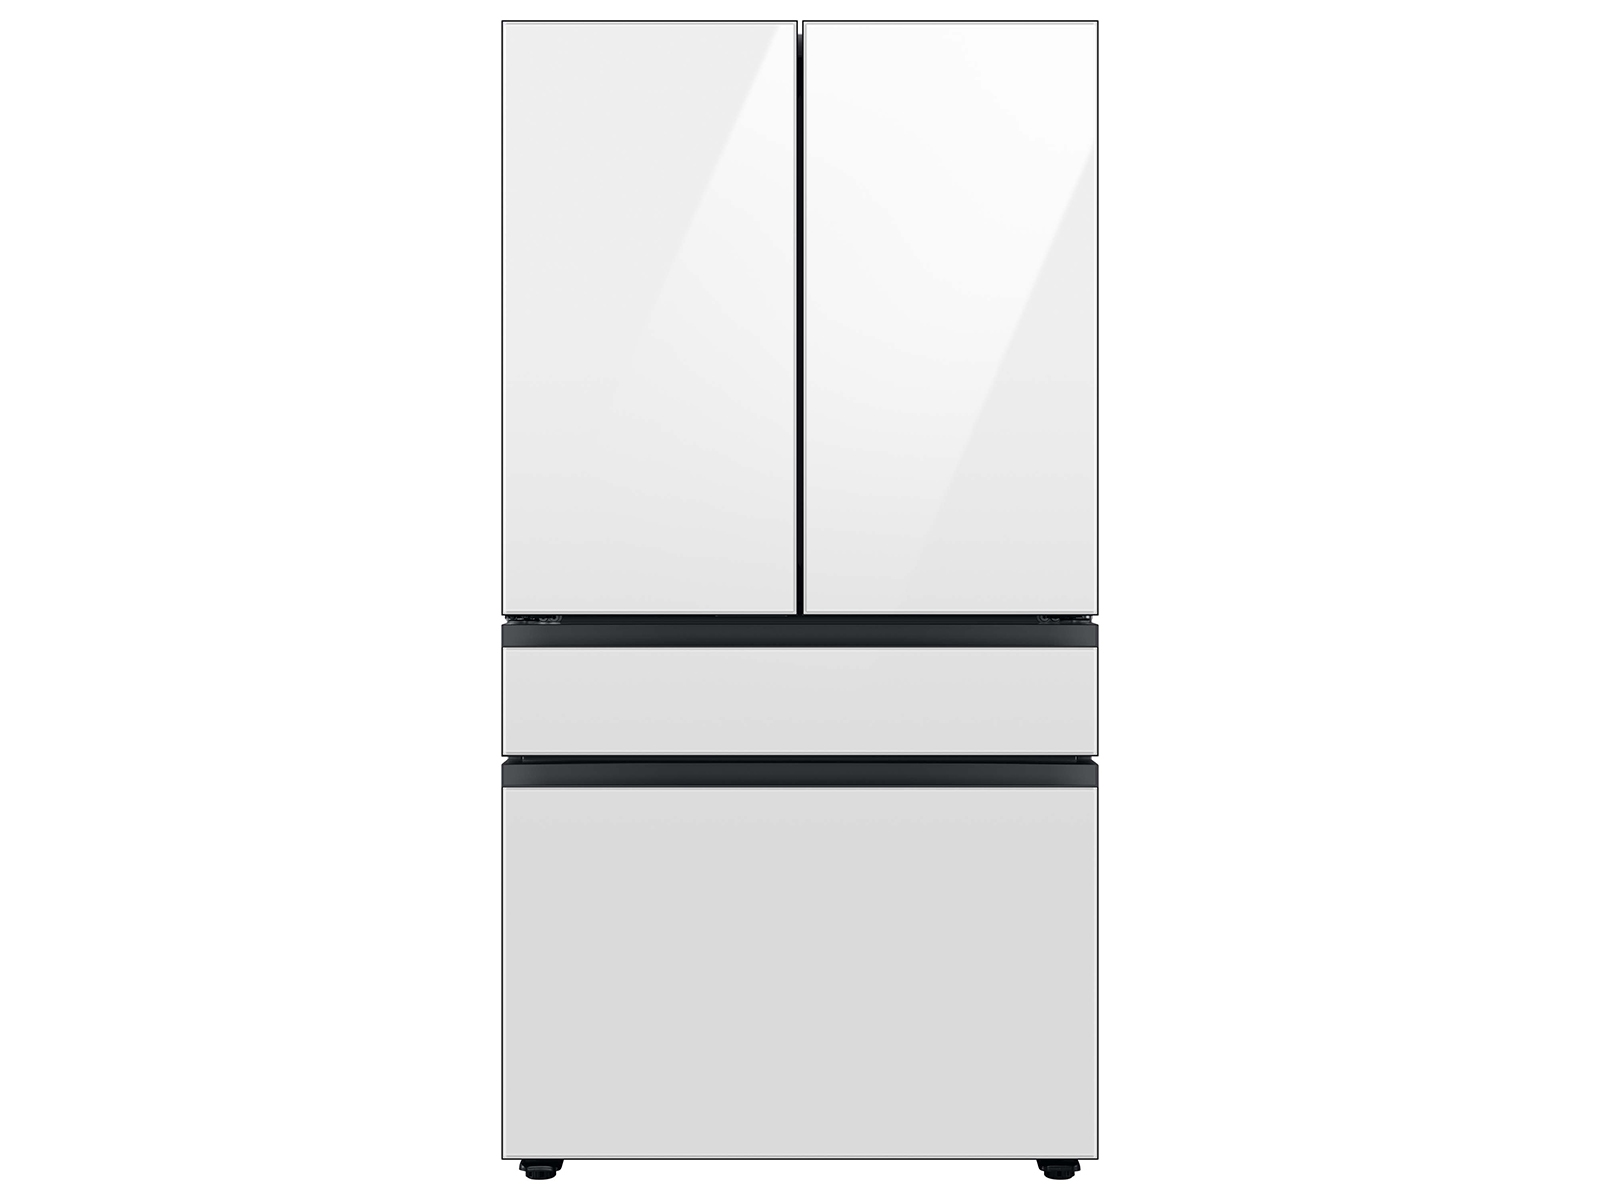 Photos - Fridge Samsung Bespoke 4-Door French Door Refrigerator  with AutoFill (23 cu. ft.)